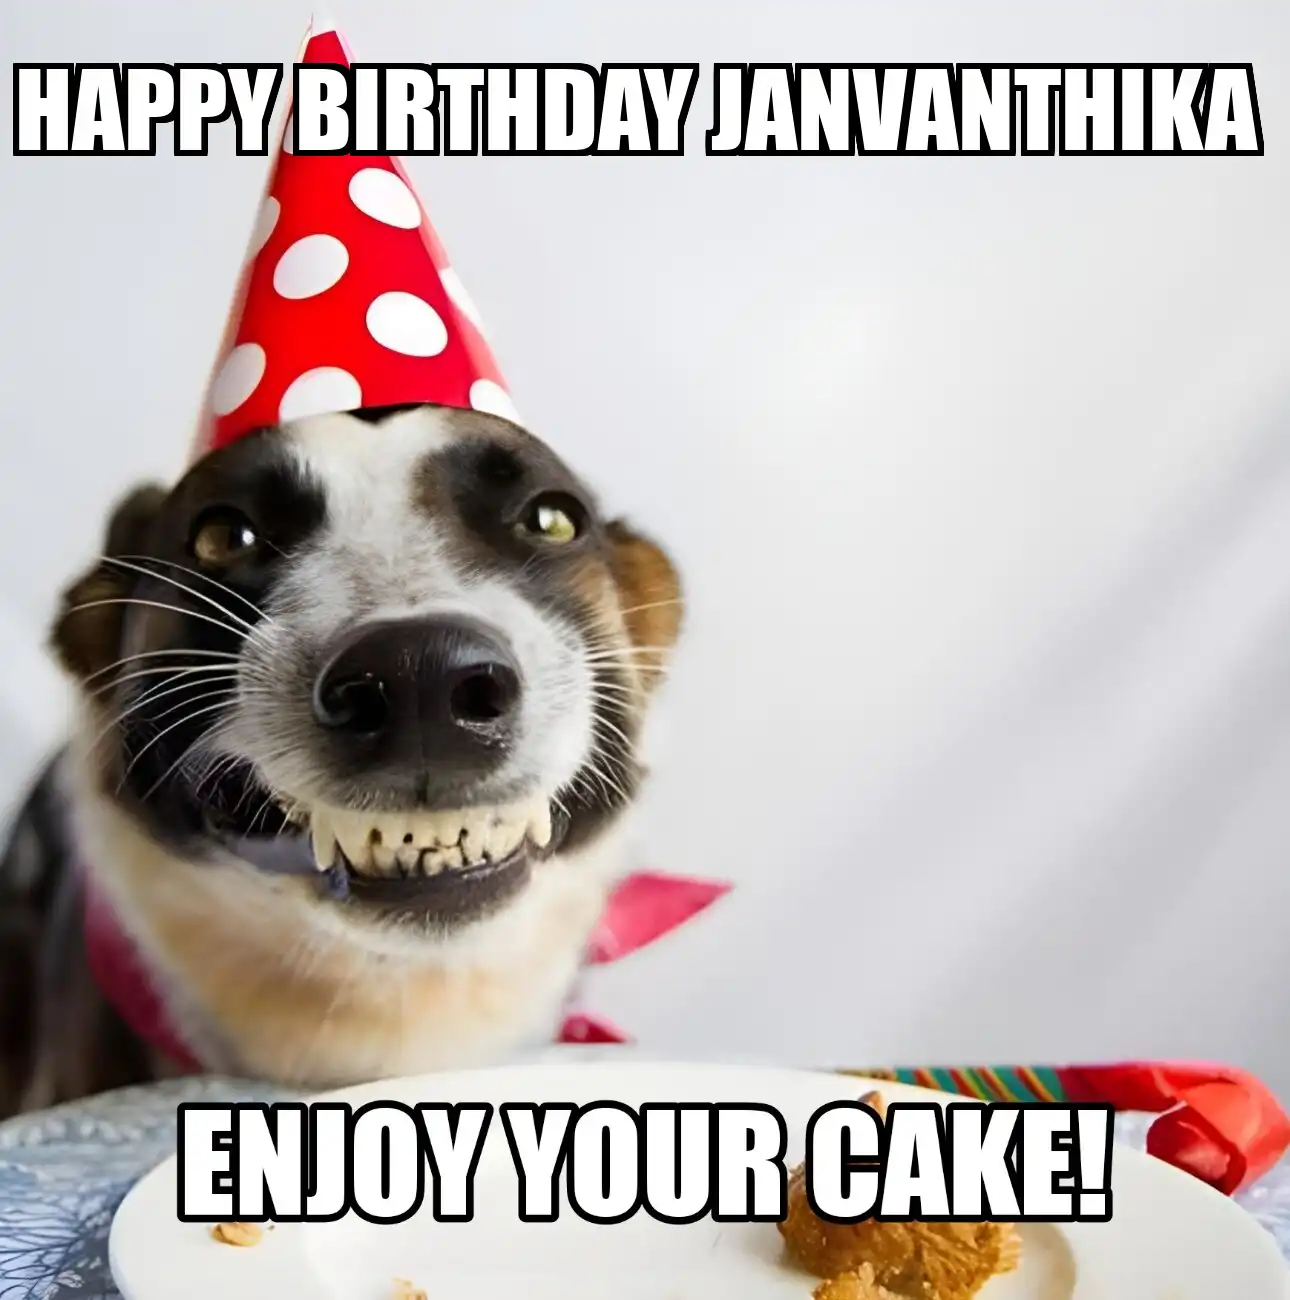 Happy Birthday Janvanthika Enjoy Your Cake Dog Meme